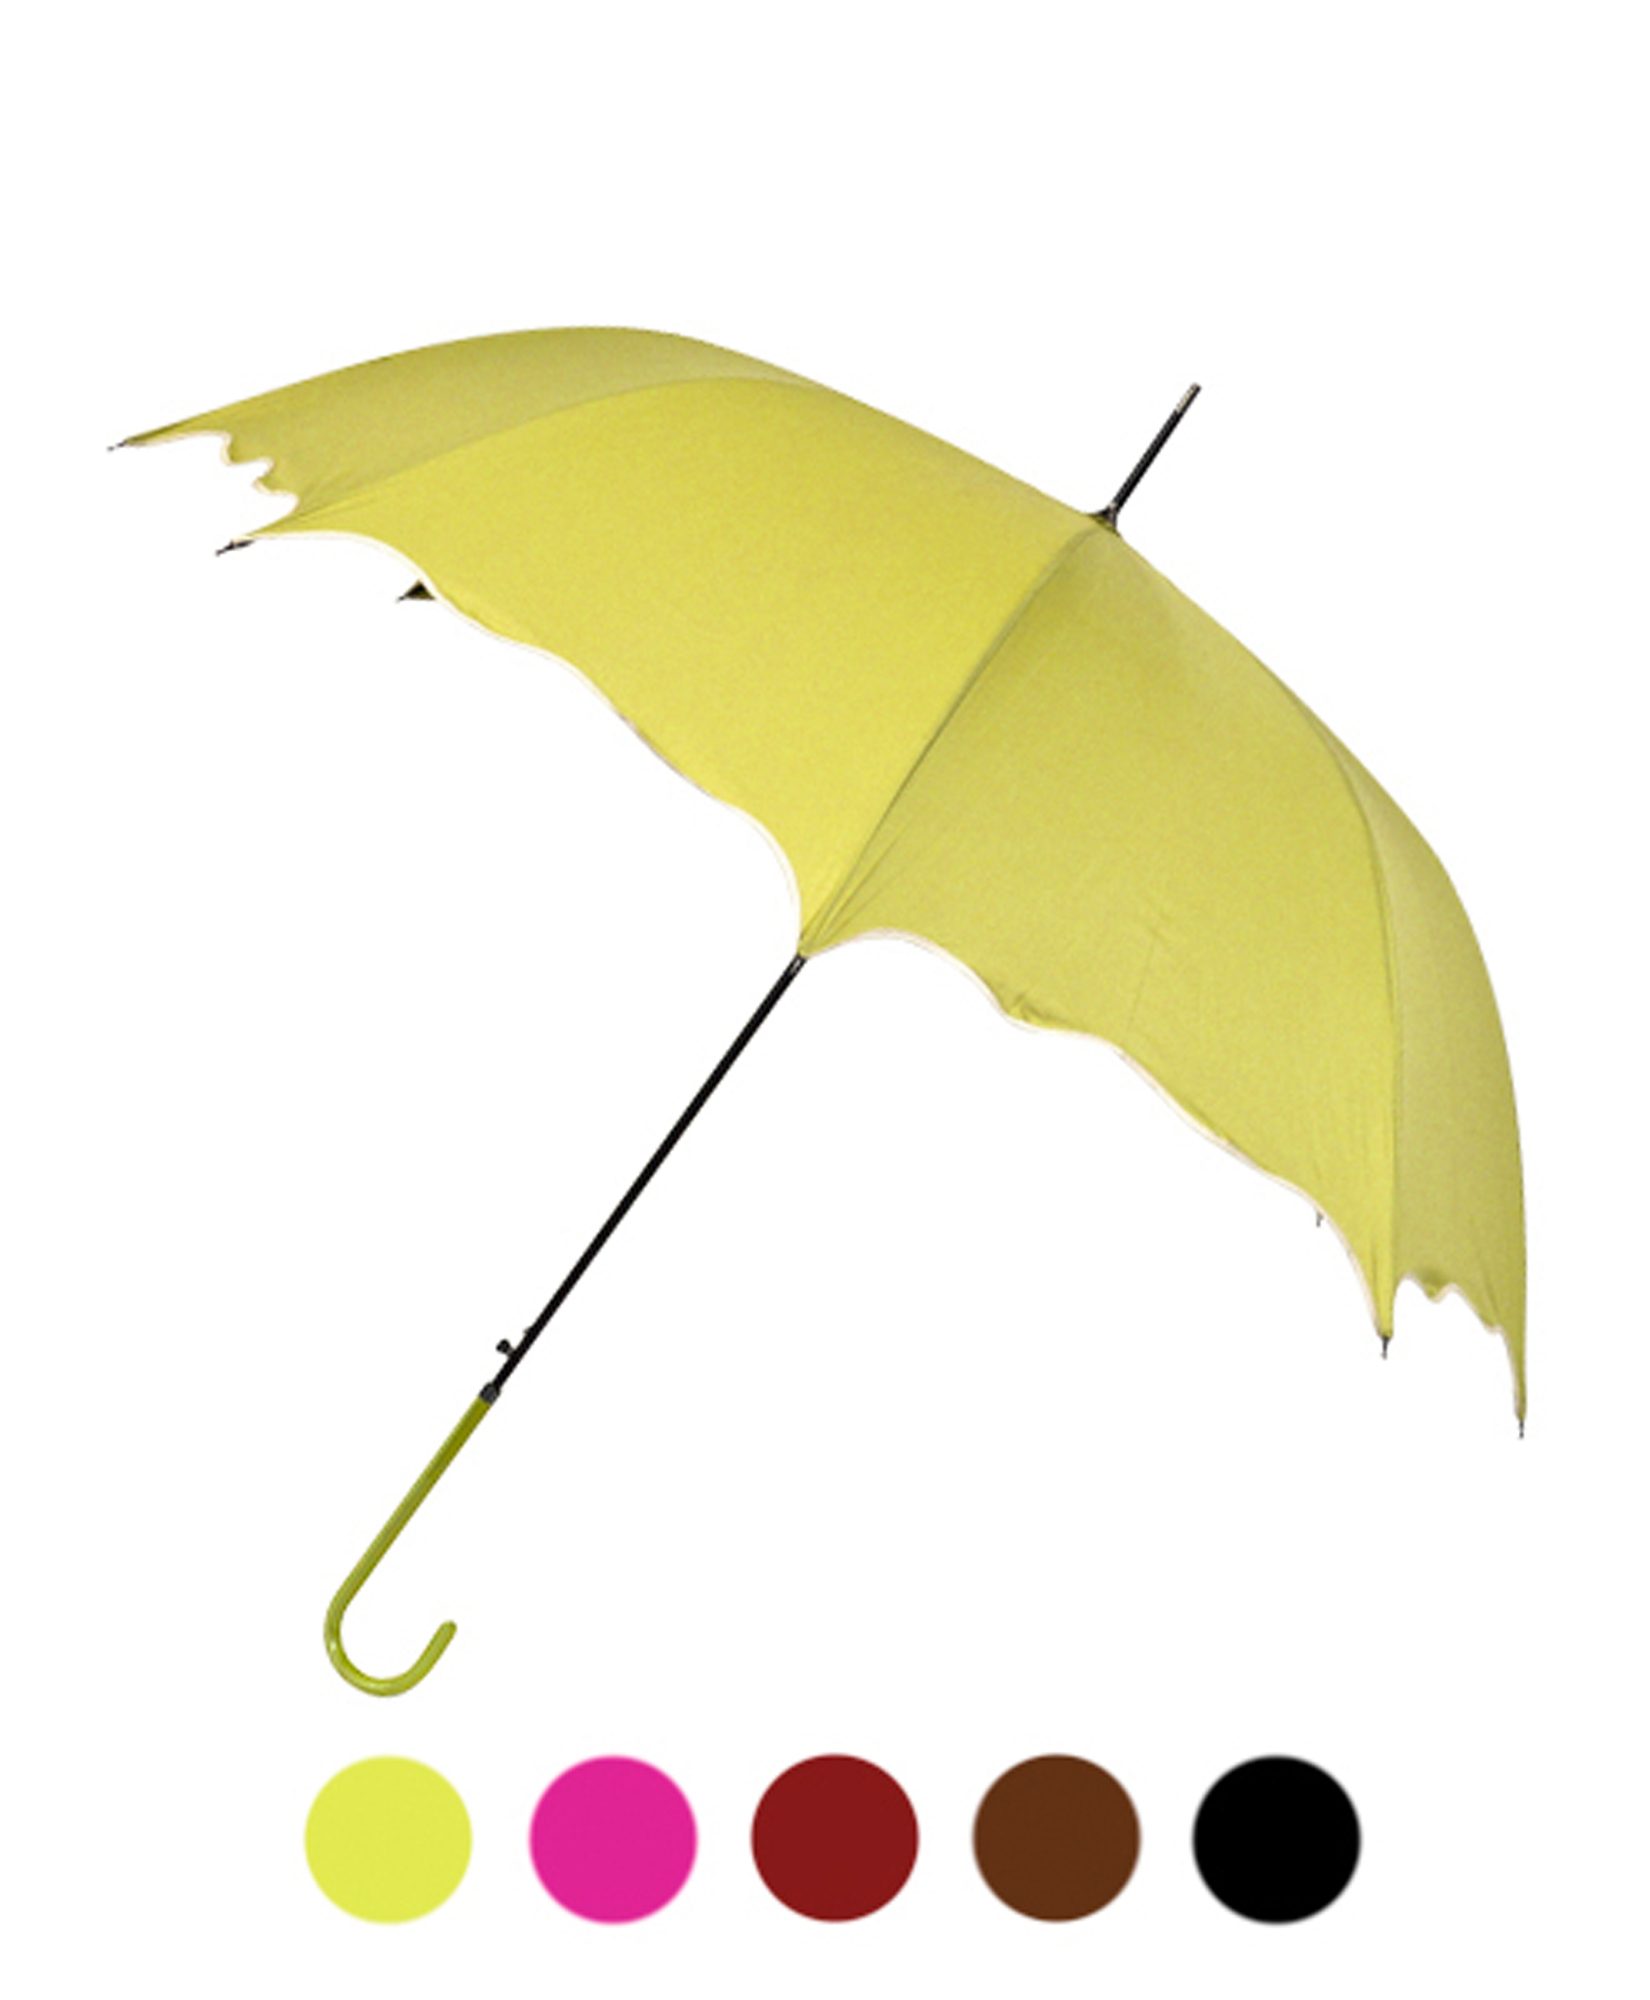 Flower-Petal Wind-Resistant Premium Umbrella